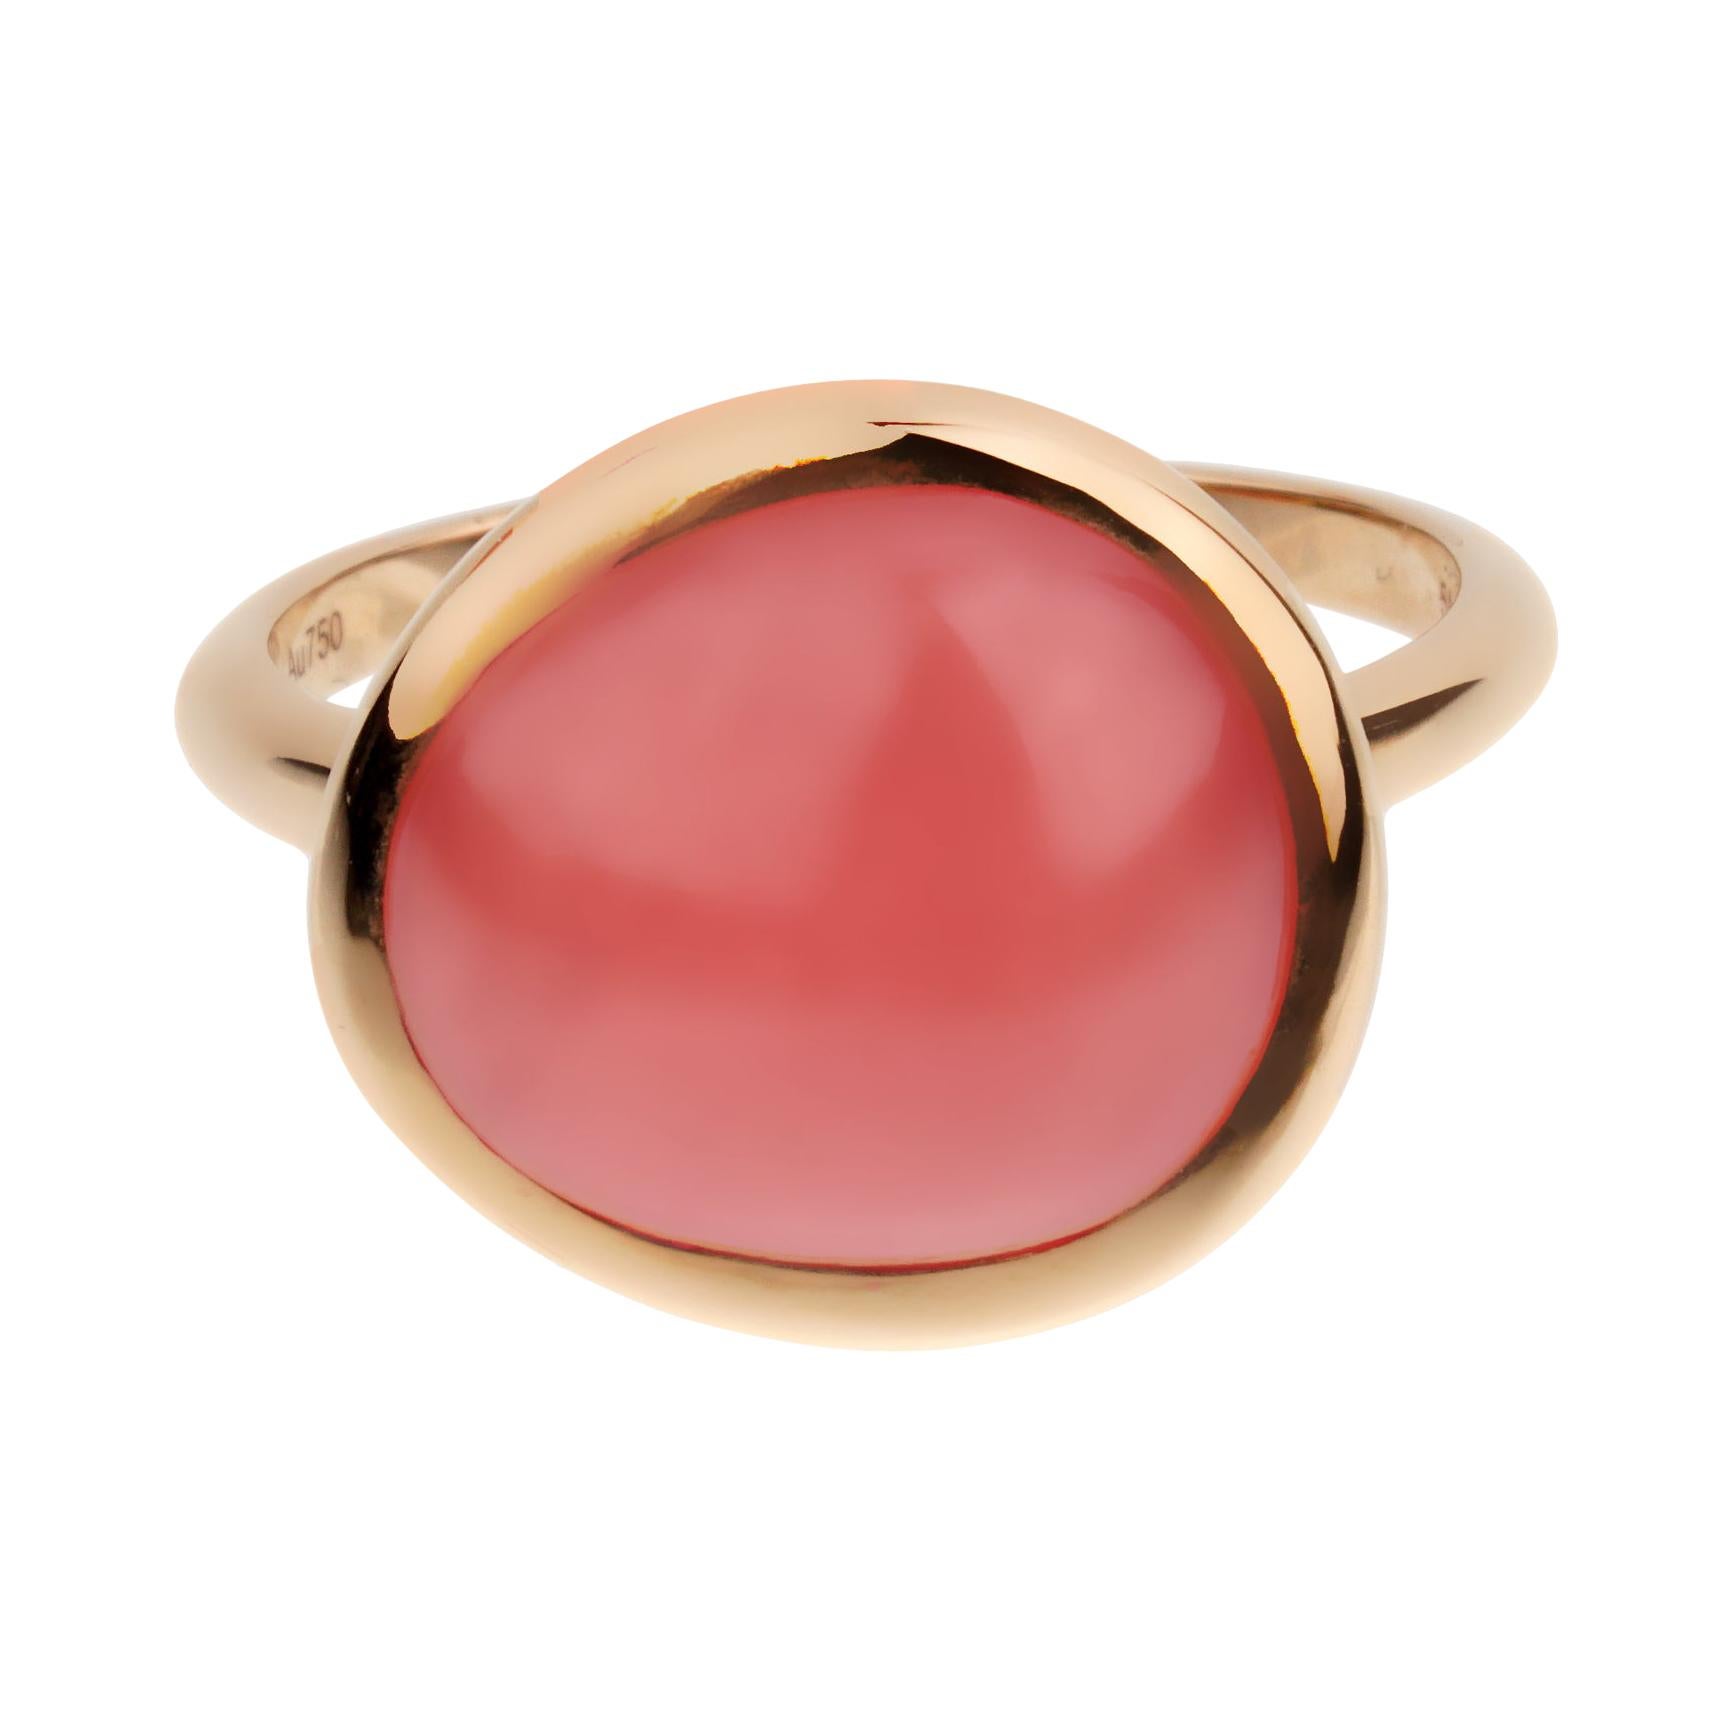 Rhodochrosite Gemstone Ring Sterling Silver Ring Pink Rhodochrosite Ring Wedding Ring Jewelry Pink Stone Ring Rhodochrosite Ring